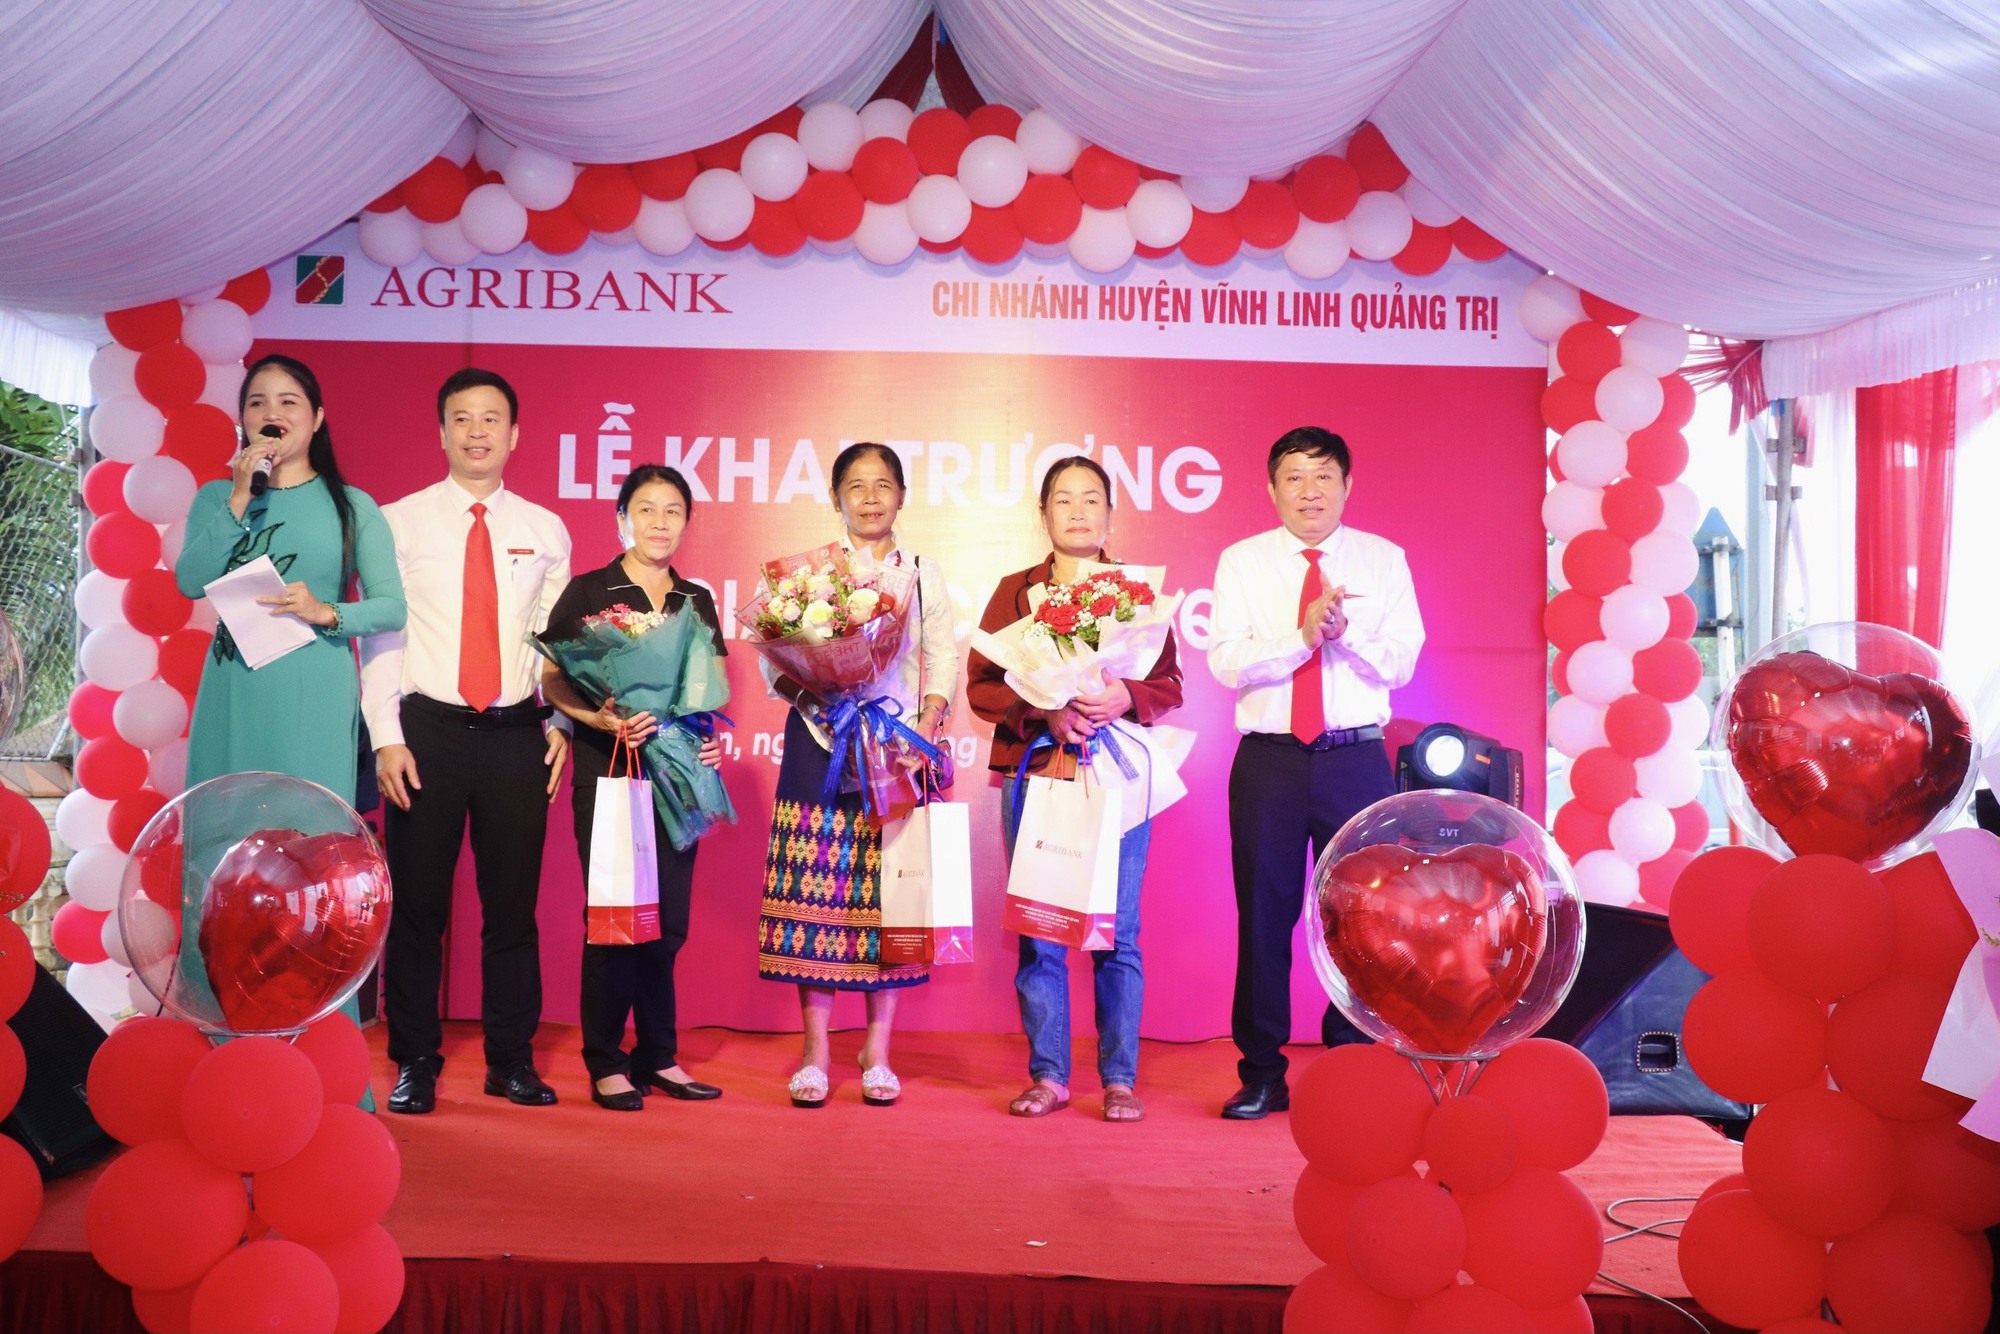 Quảng Trị: Agribank khai trương Phòng giao dịch Bến Quan – Chi nhánh huyện Vĩnh Linh - Ảnh 4.